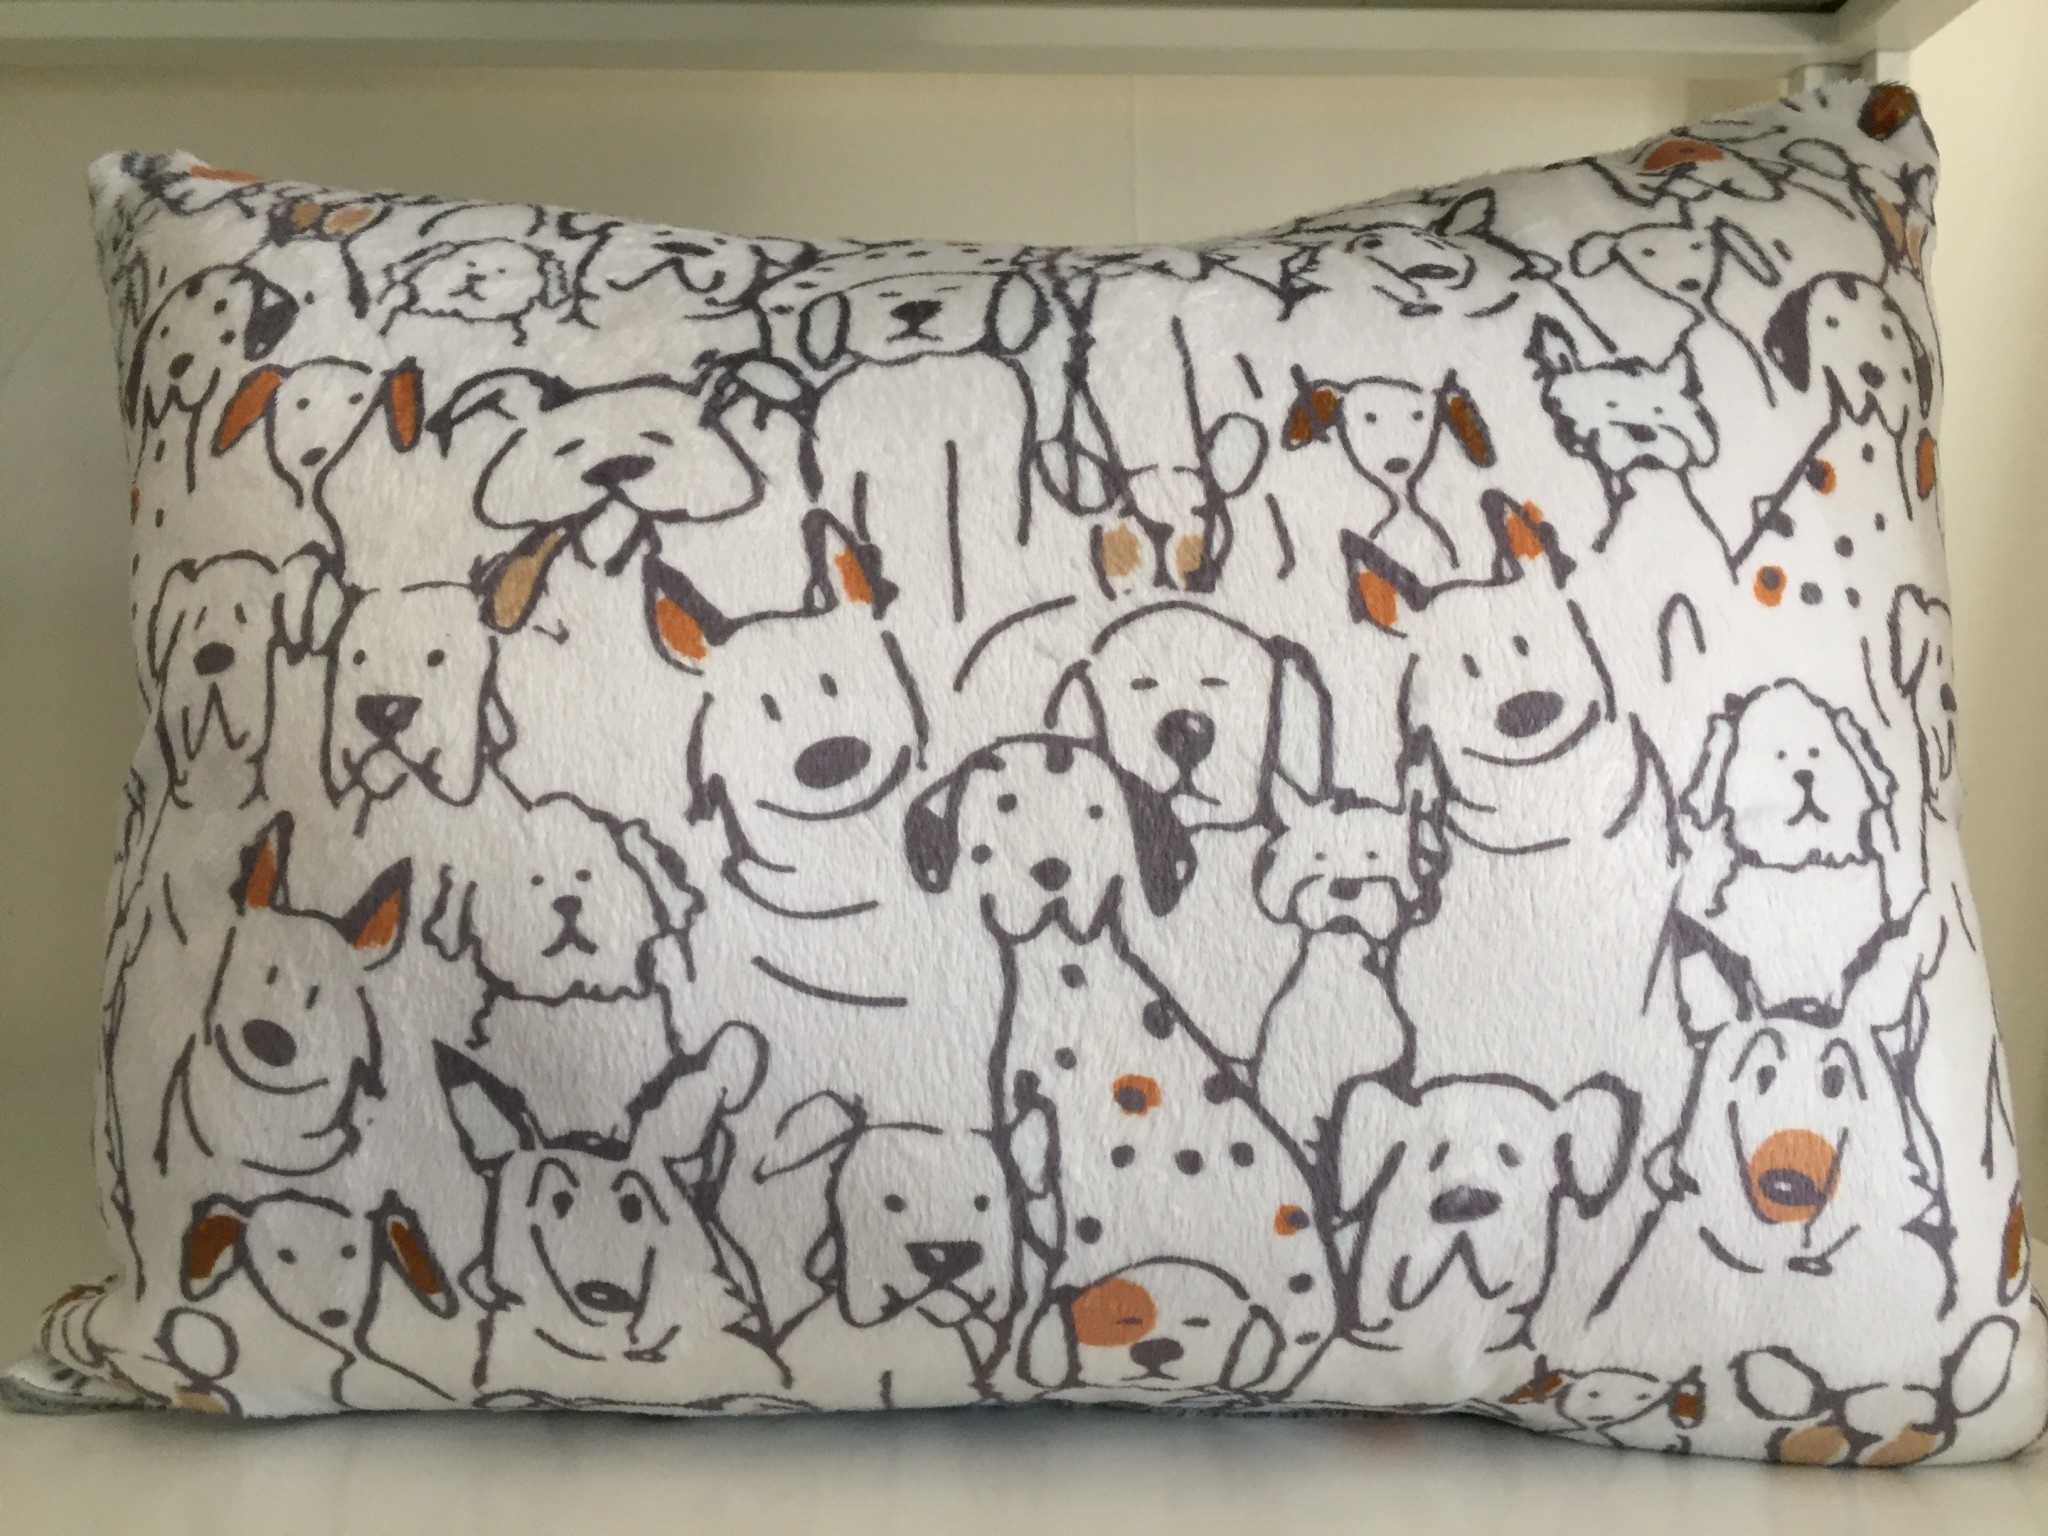 Snori Dori Design Snori Dori Designs Dogs Pillow